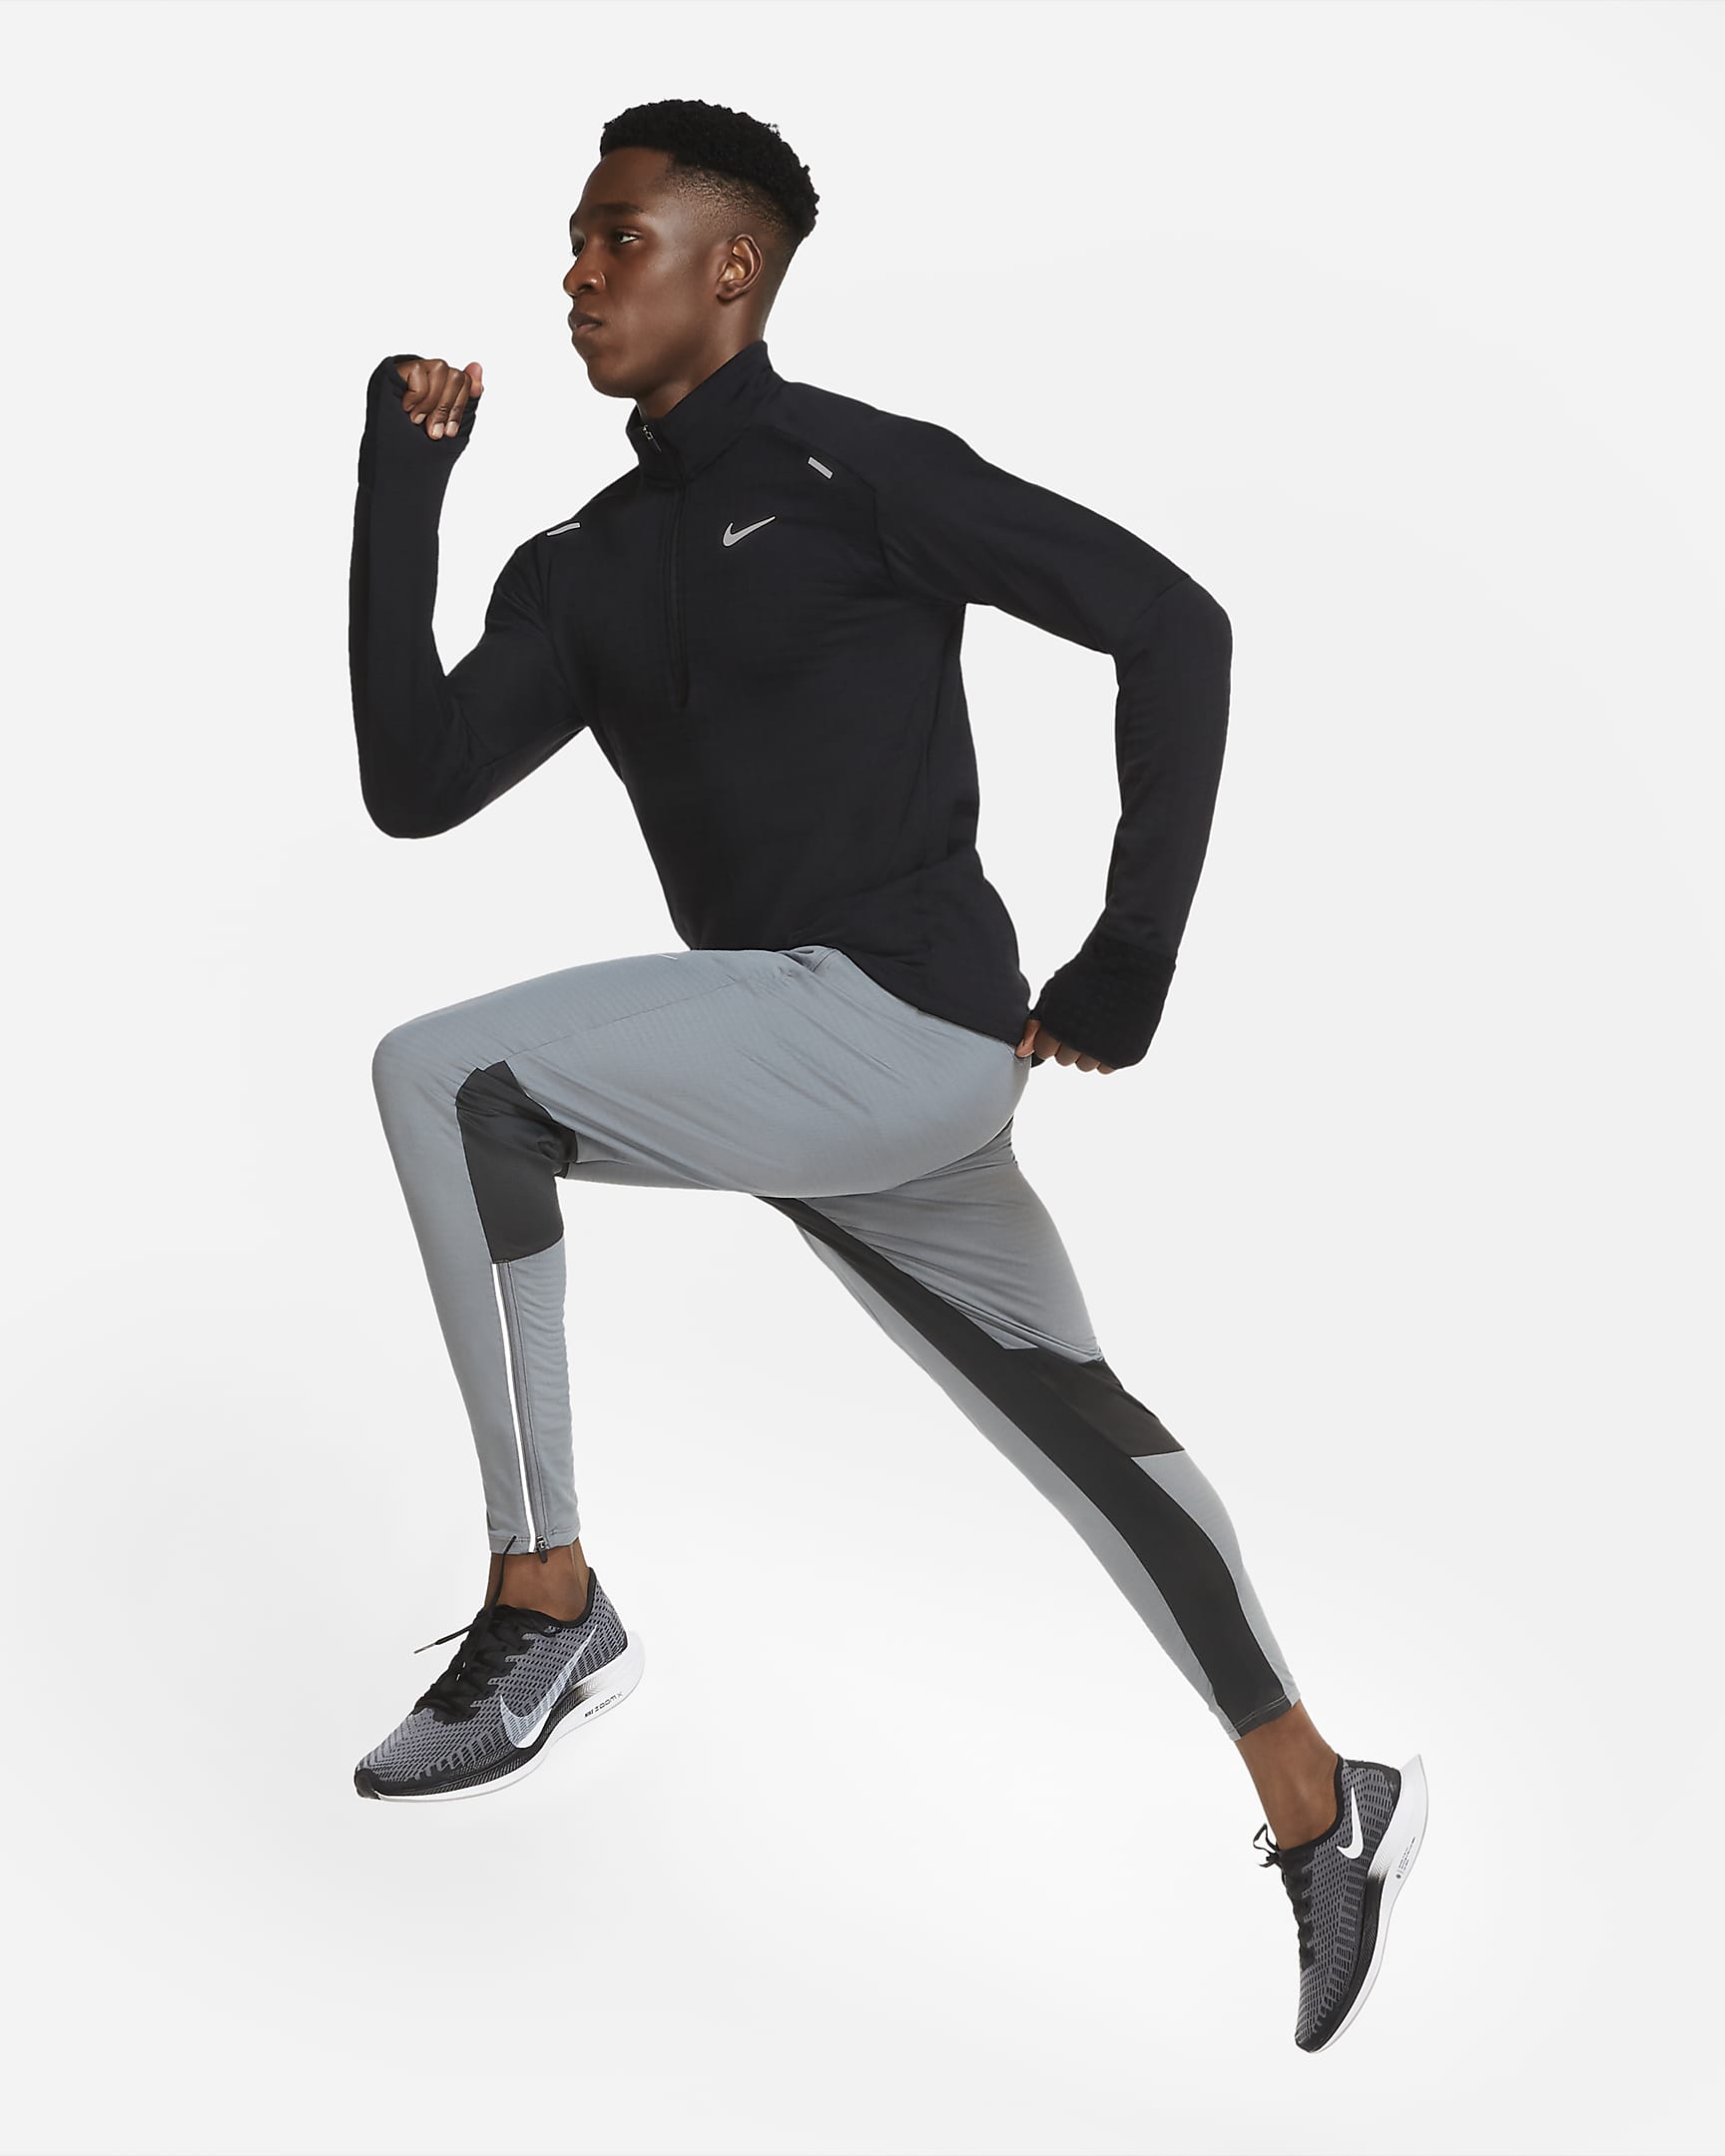 Nike Sphere Men's 1/2-Zip Running Top - Black/Black